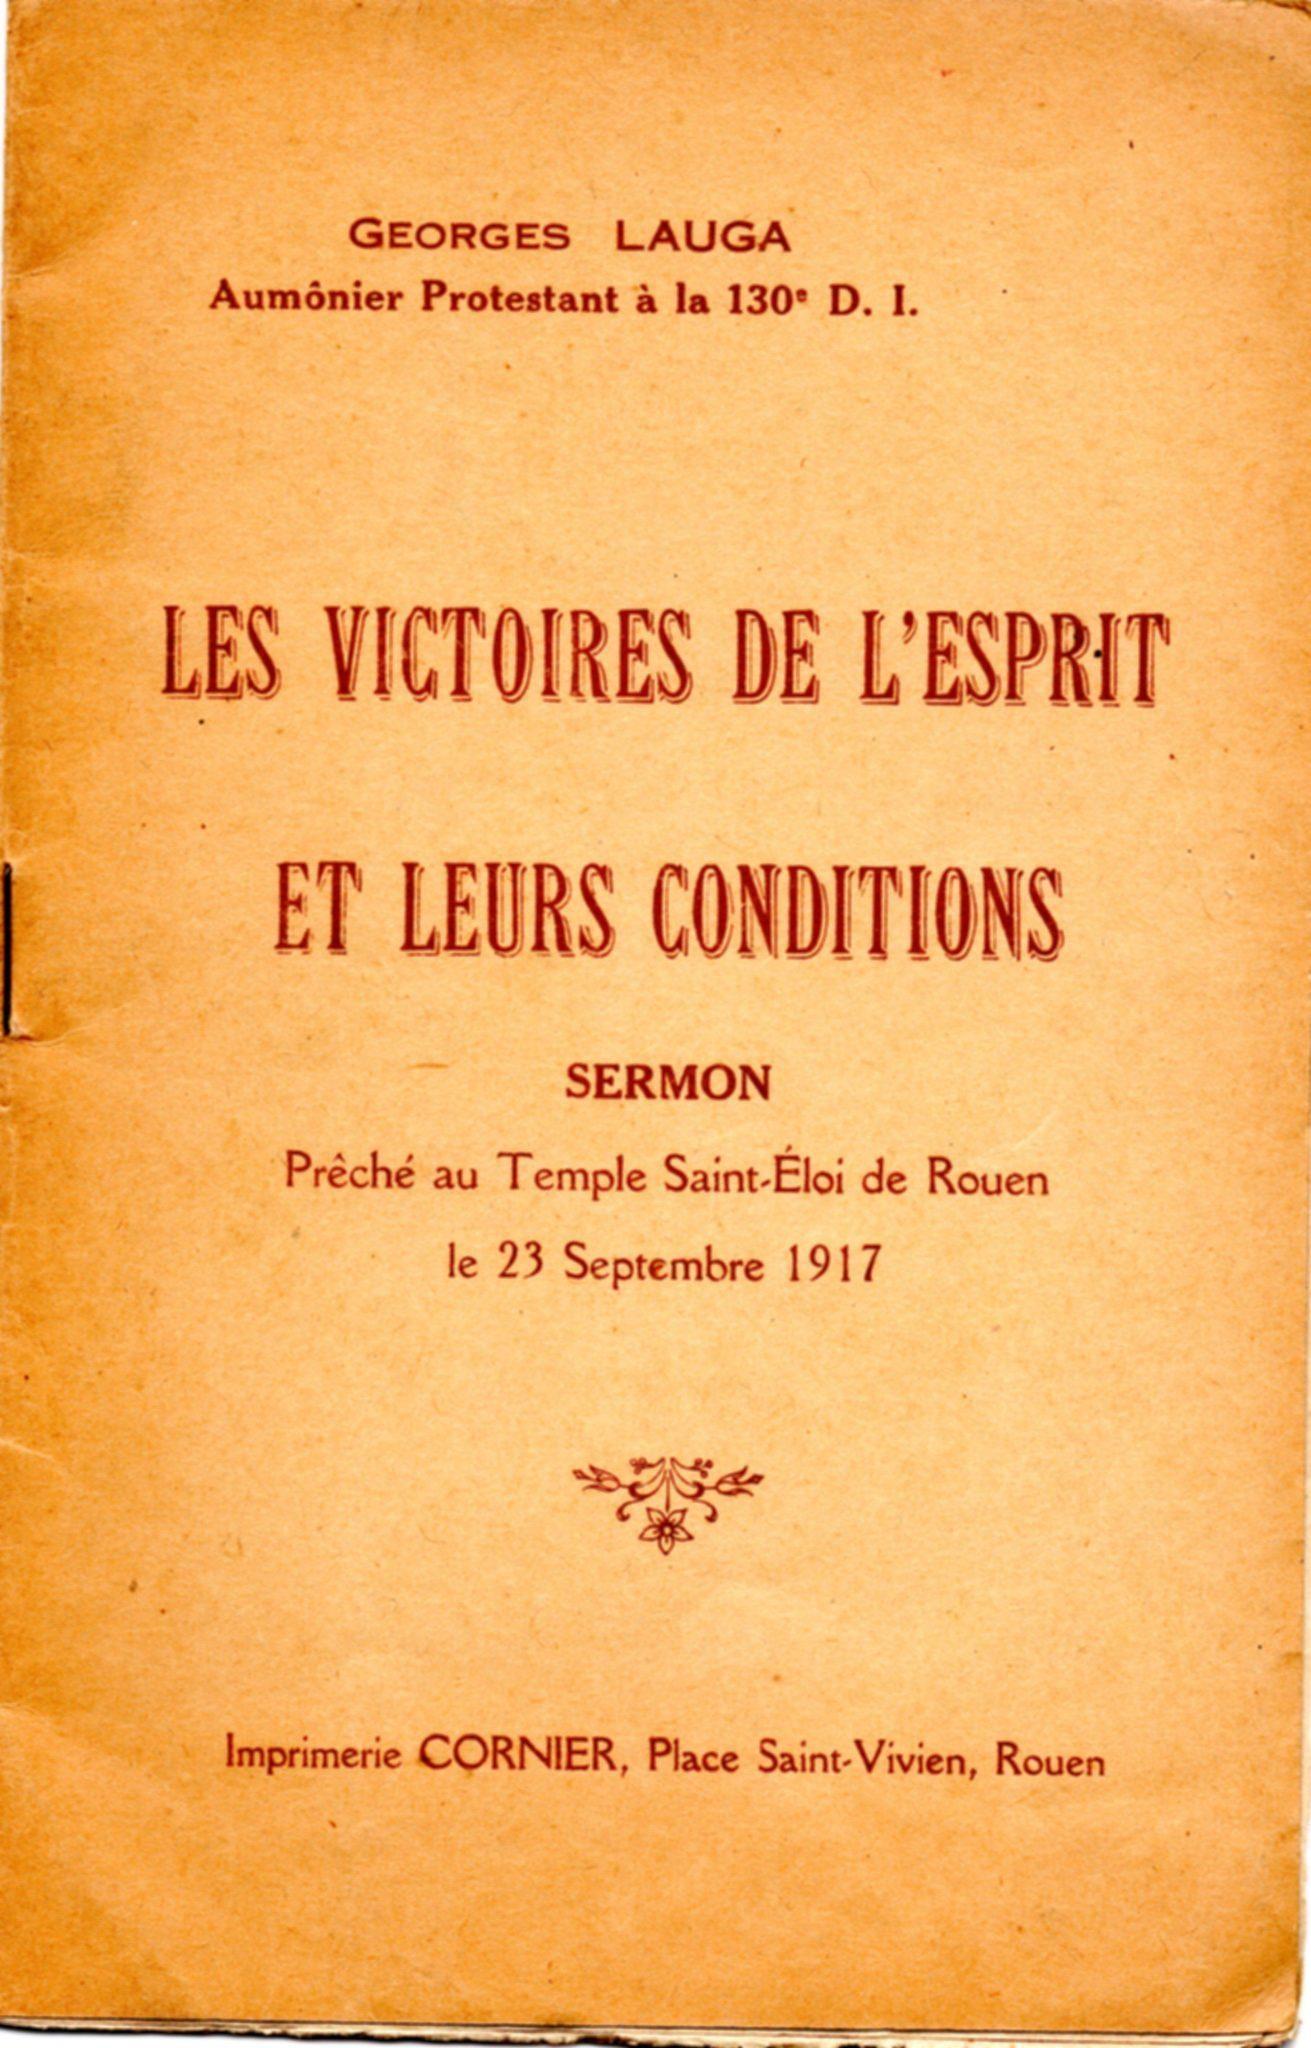 Sermon imprimé du pasteur aumônier Georges Lauga (1917)